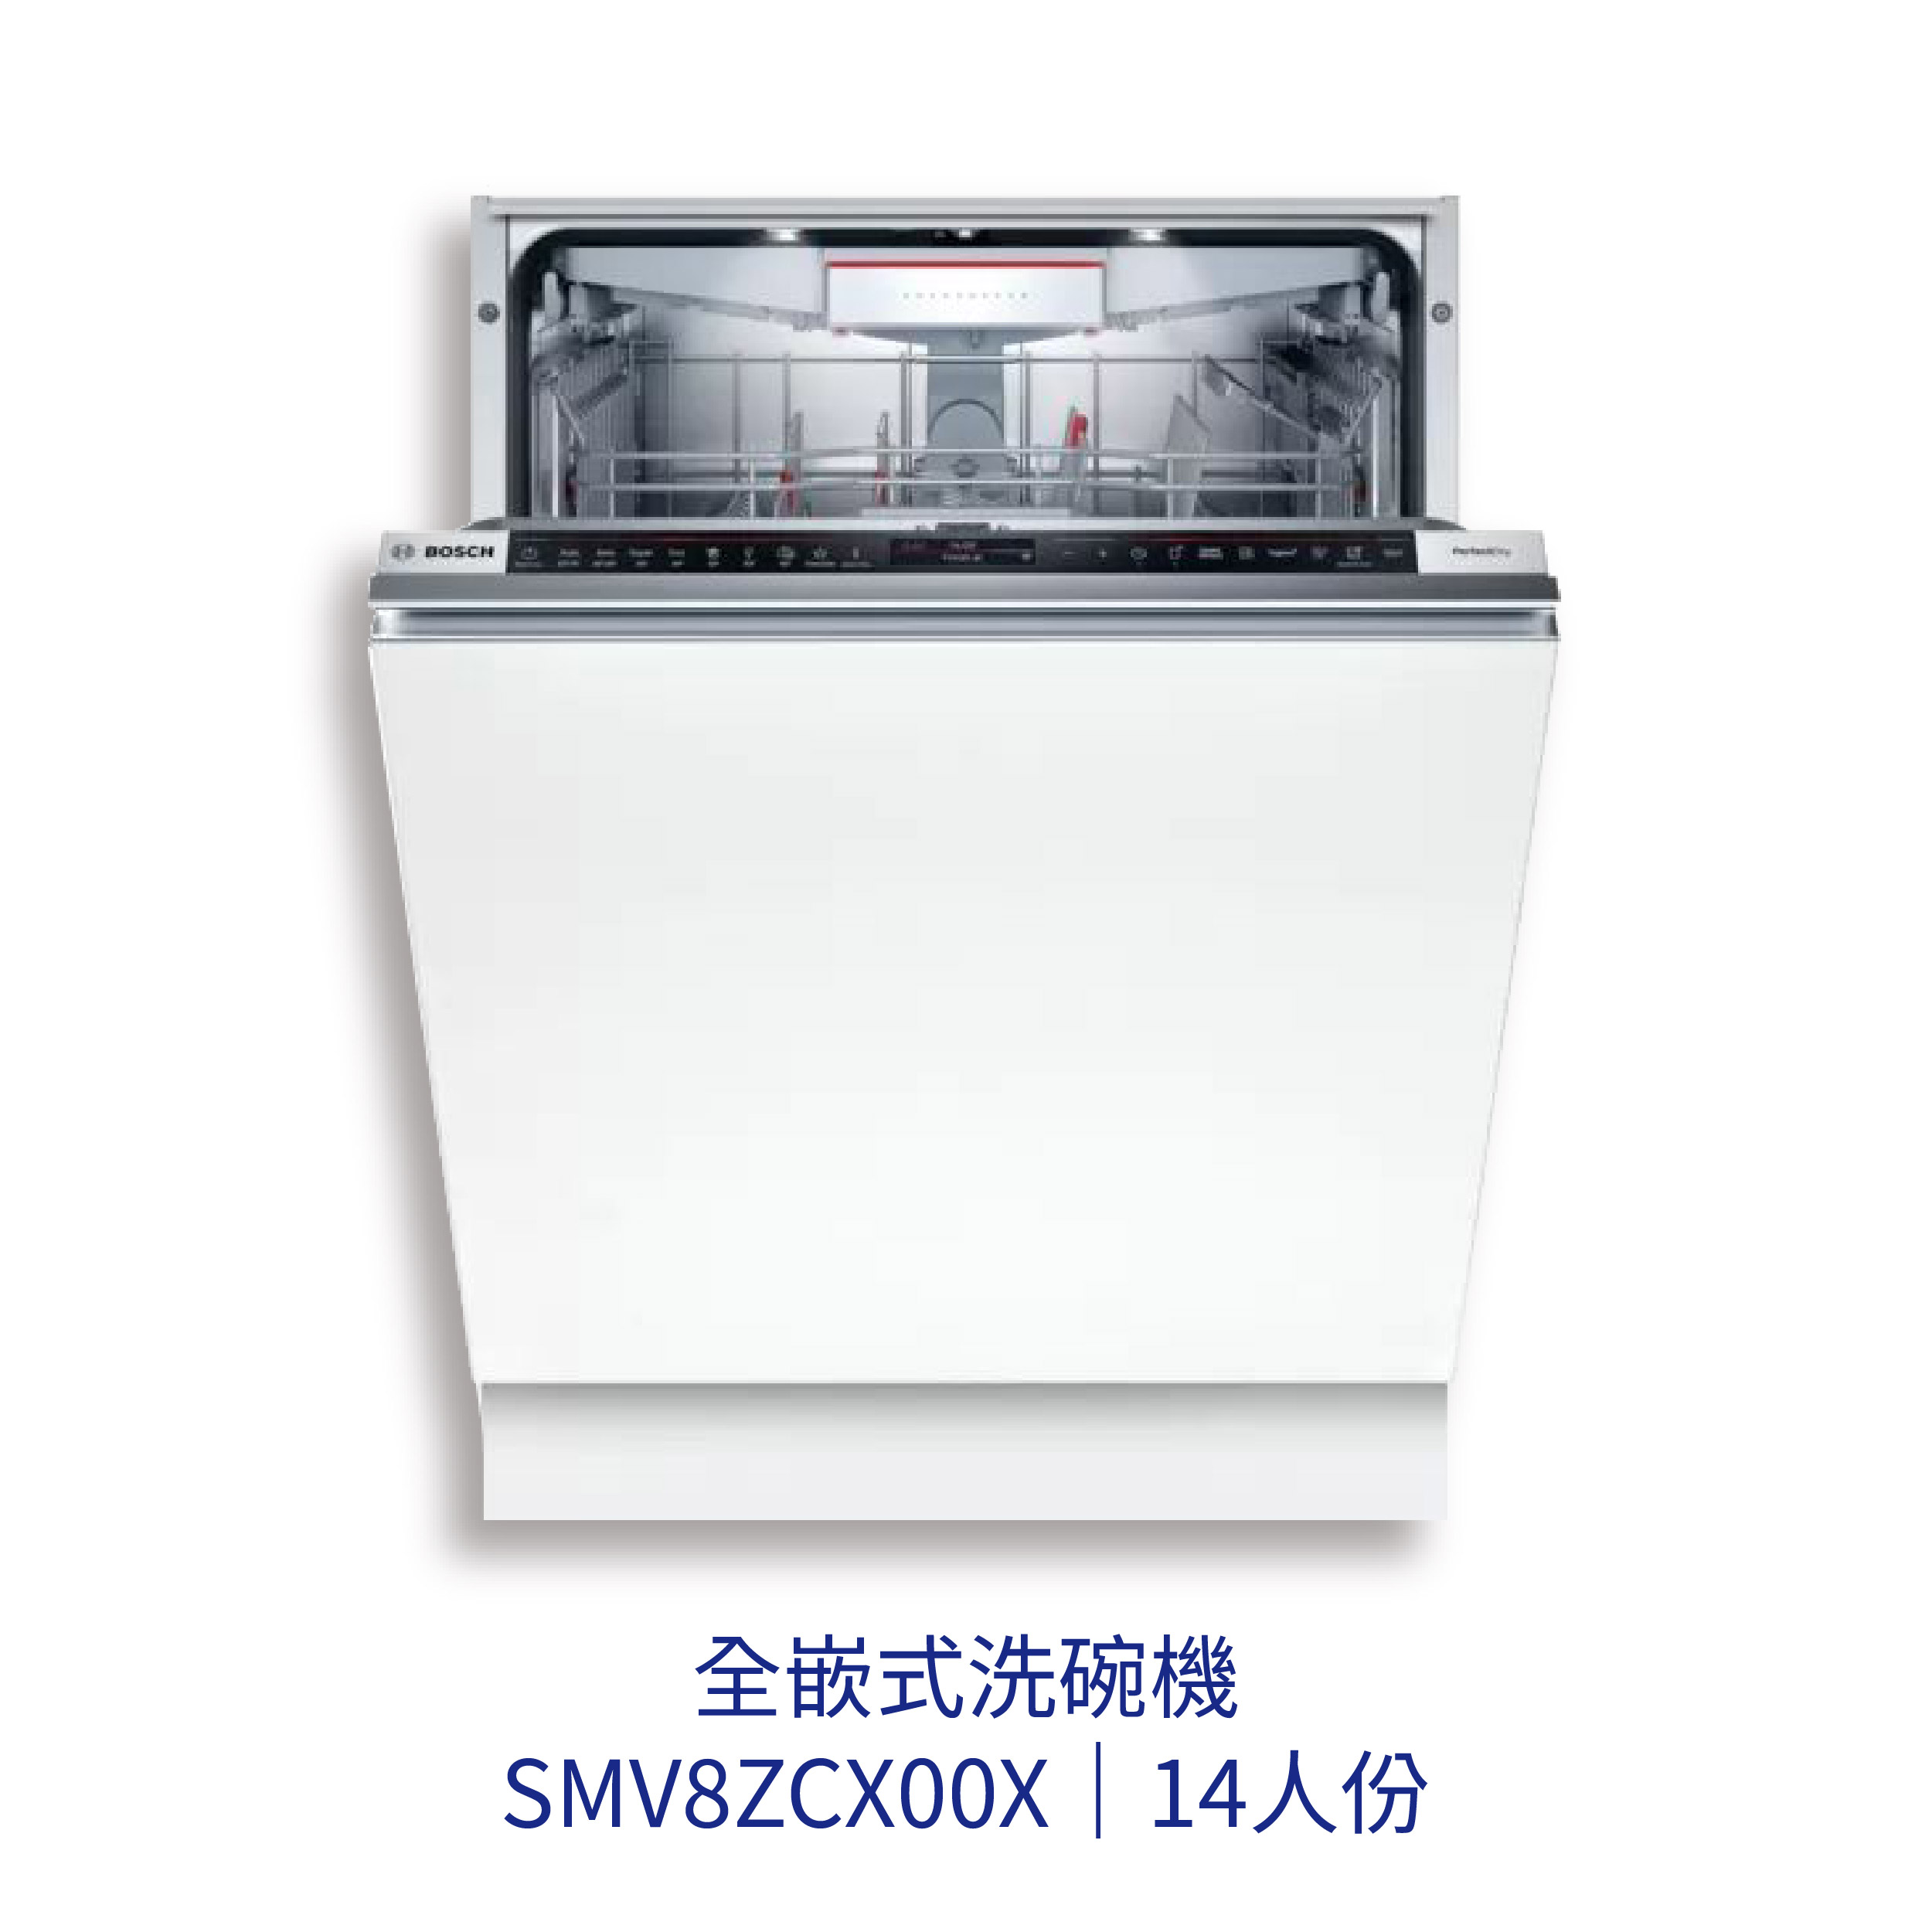 【點數10%回饋】✨安裝客服報價✨ BOSCH博世家電 SMV8ZCX00X 60cm洗碗機 全嵌式 110v 沸石